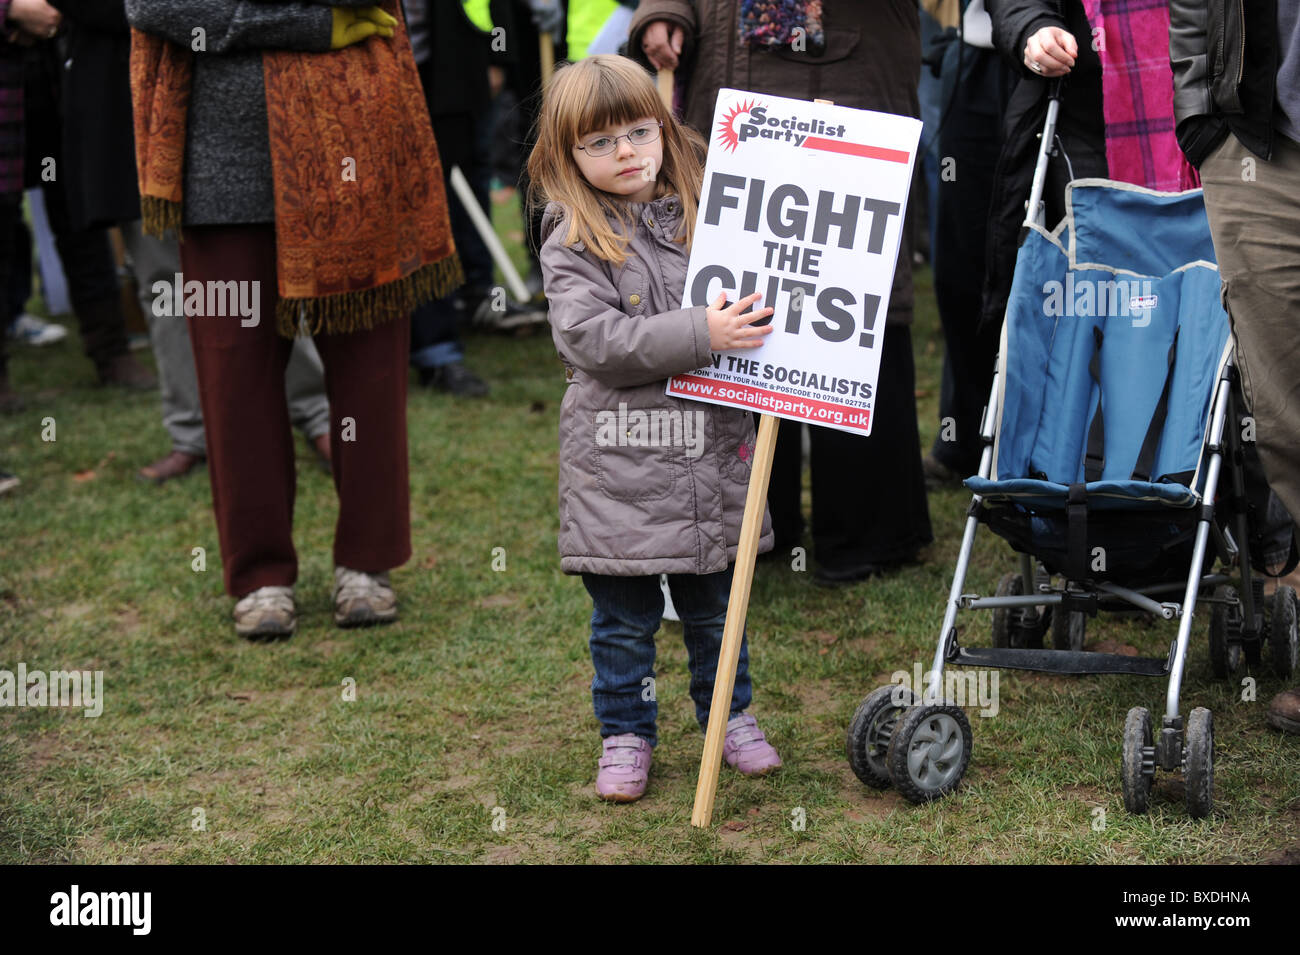 Une jeune fille avec un combat les coupes placard avant une manifestation sur les compressions du gouvernement pour le financement de l'enseignement supérieur Banque D'Images